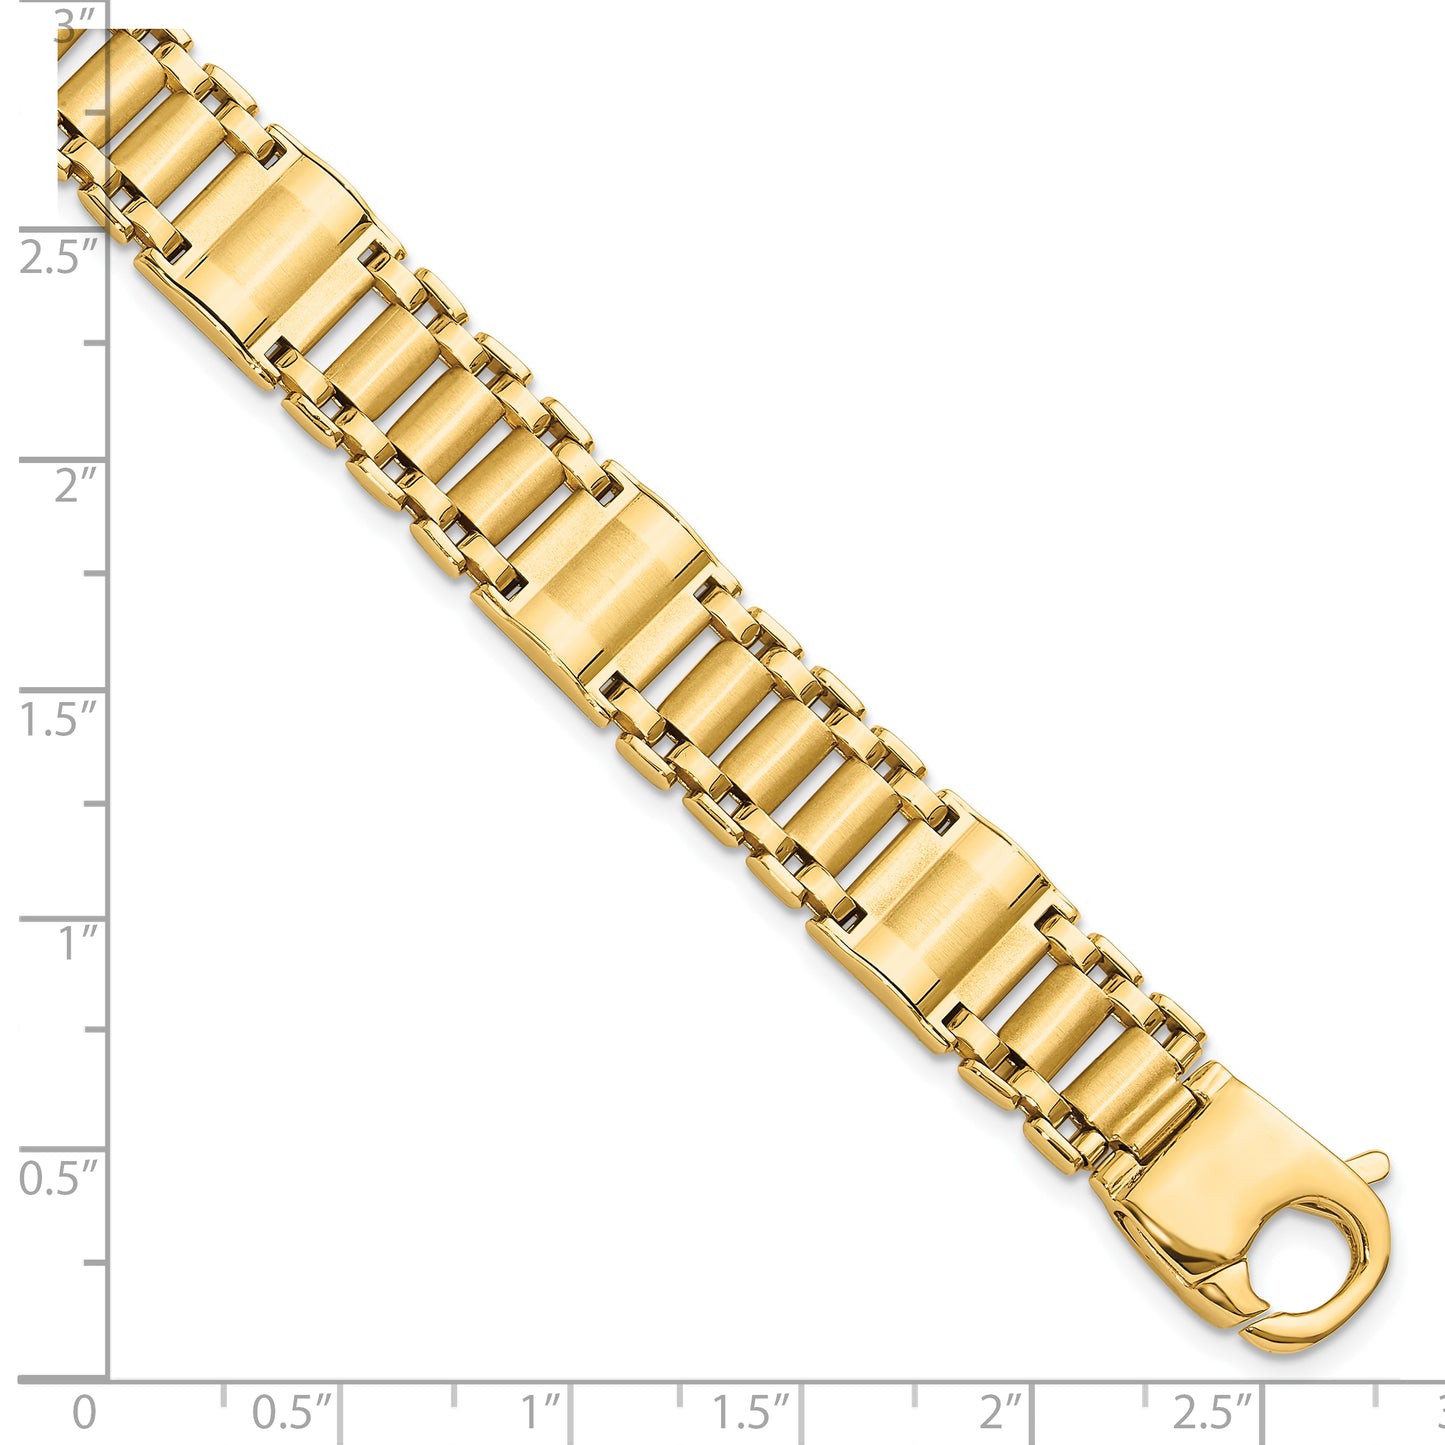 14k Satin and Polished Men's Link Bracelet